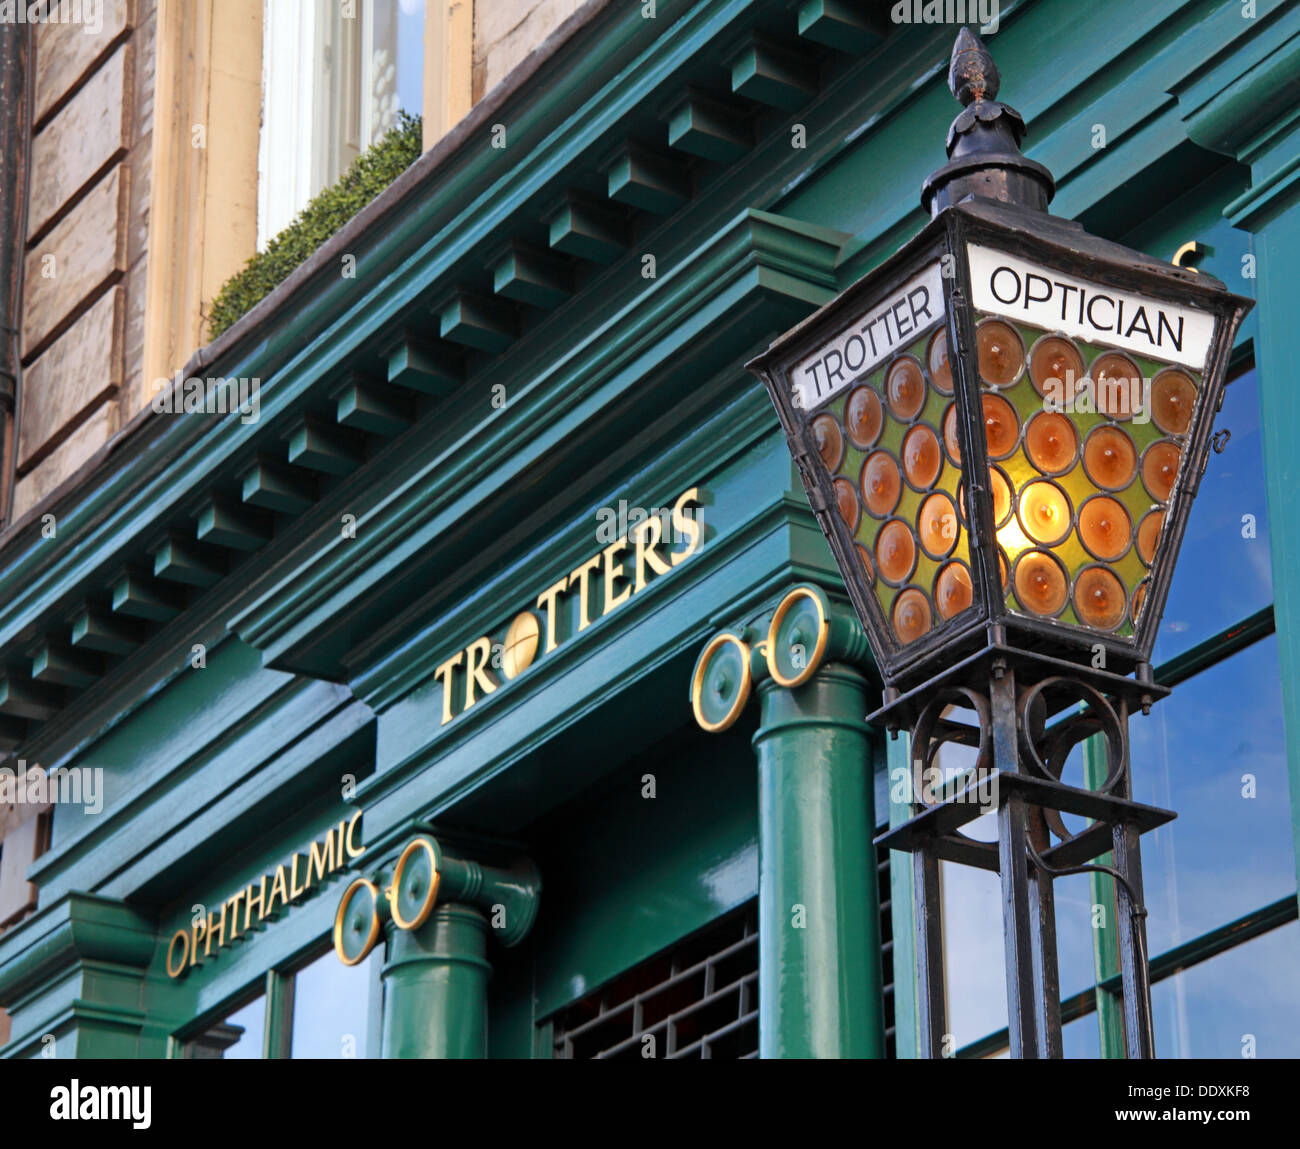 Trotters opticien,George St, New Town, Édimbourg, Écosse, Royaume-Uni Banque D'Images